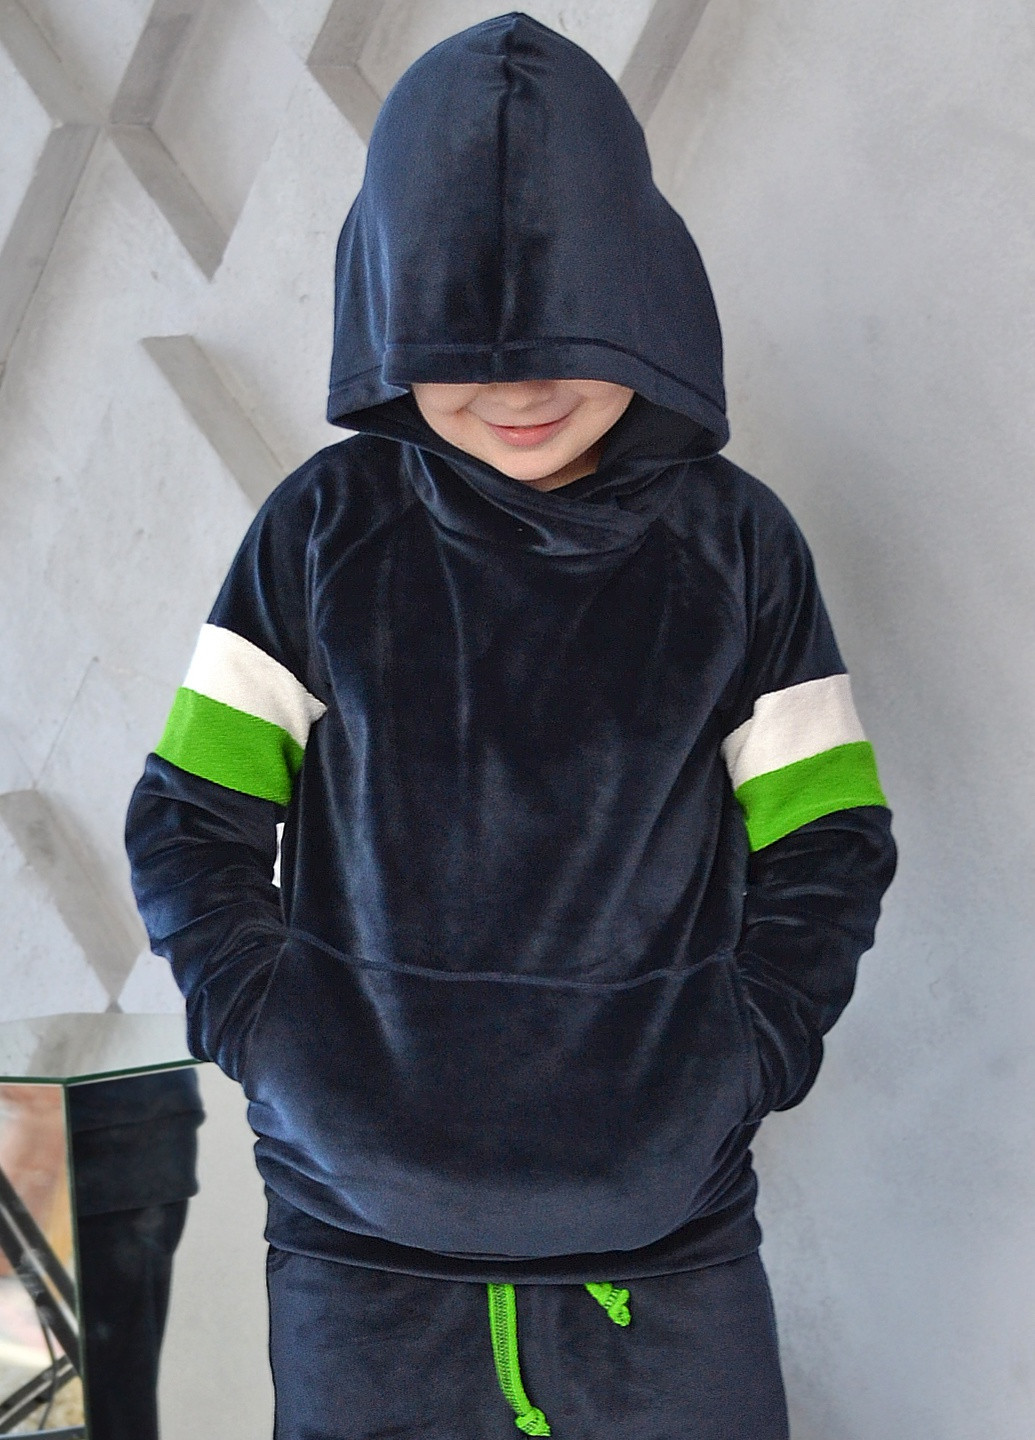 Удобный и стильный детский велюровый спортивный костюм для мальчика от ZM (258019207)